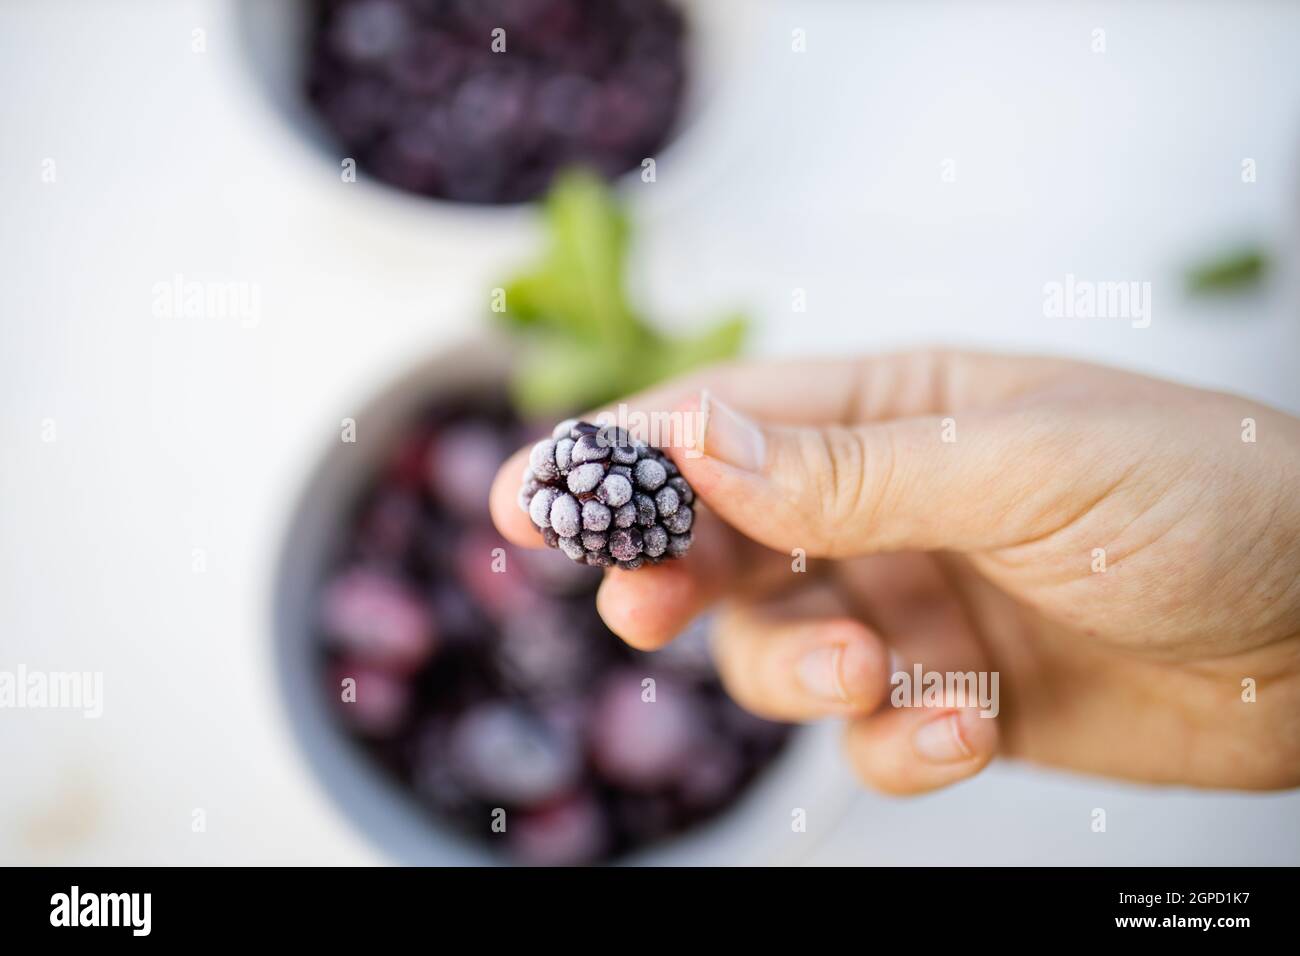 Main femelle tenant le blackberry frais au-dessus de plus de baies dans le bol. Feuilles de menthe et baies floues sur la table par le dessus. Préparation de desserts fruités Banque D'Images